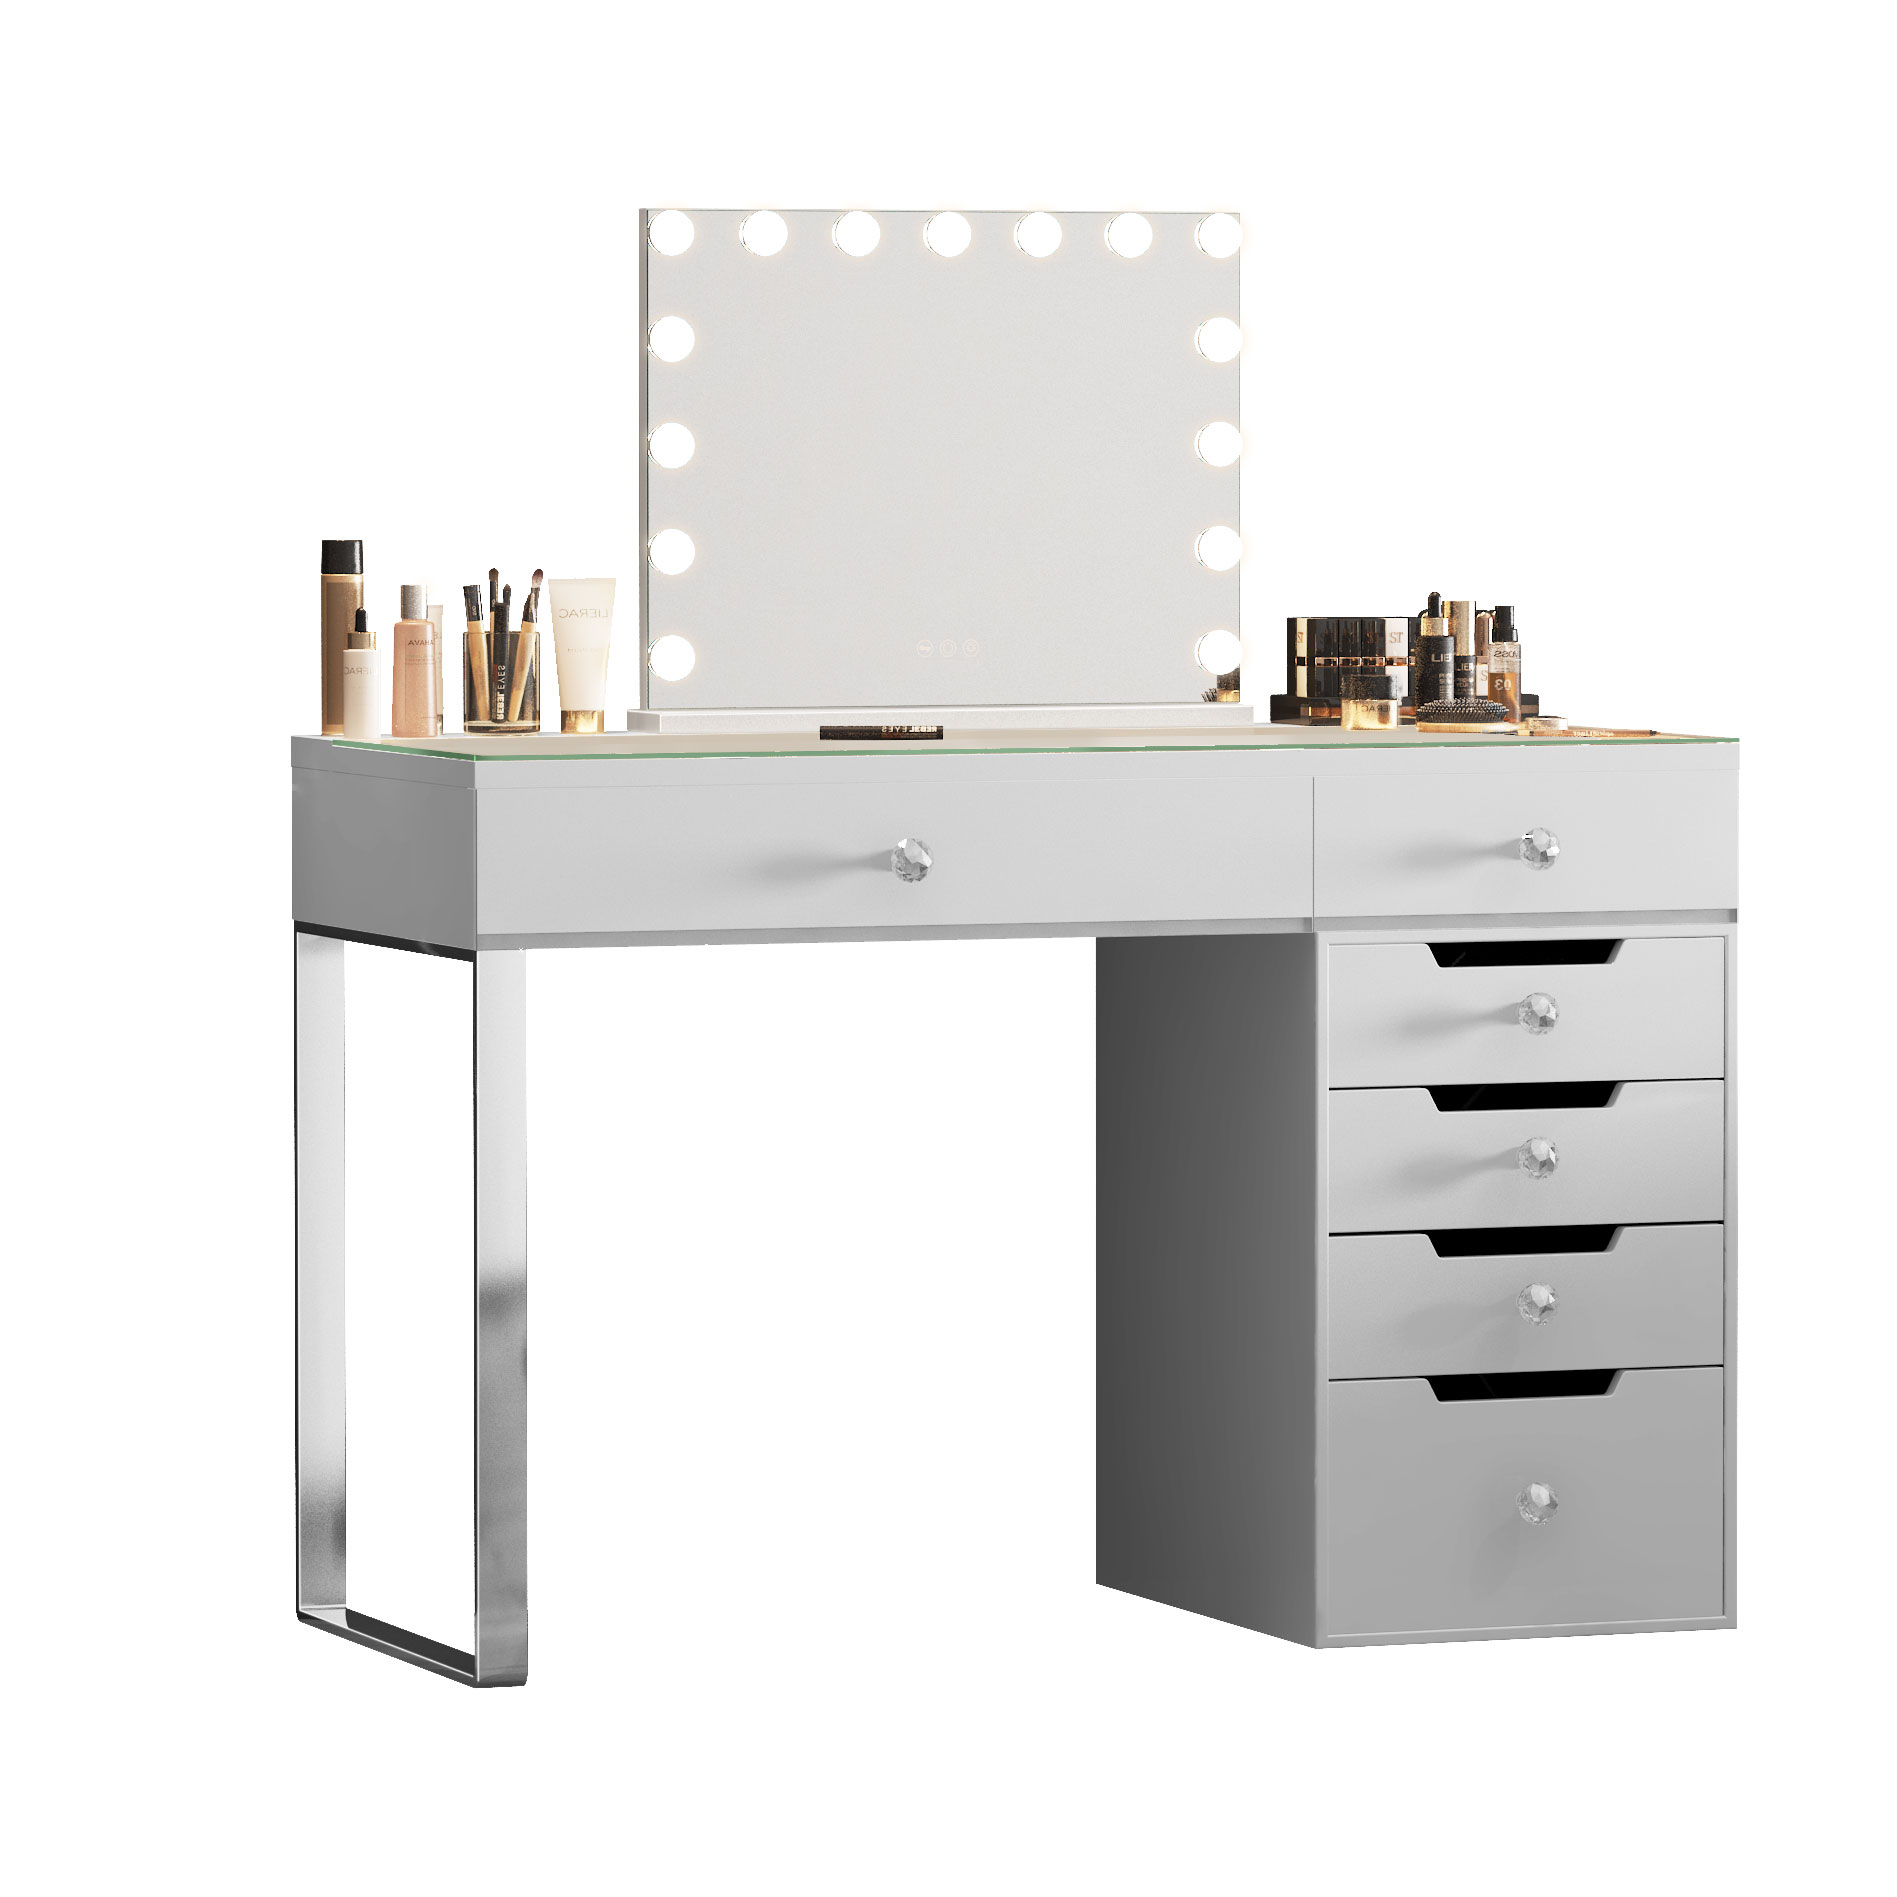 Makeup vanity desk with 6 storage drawers